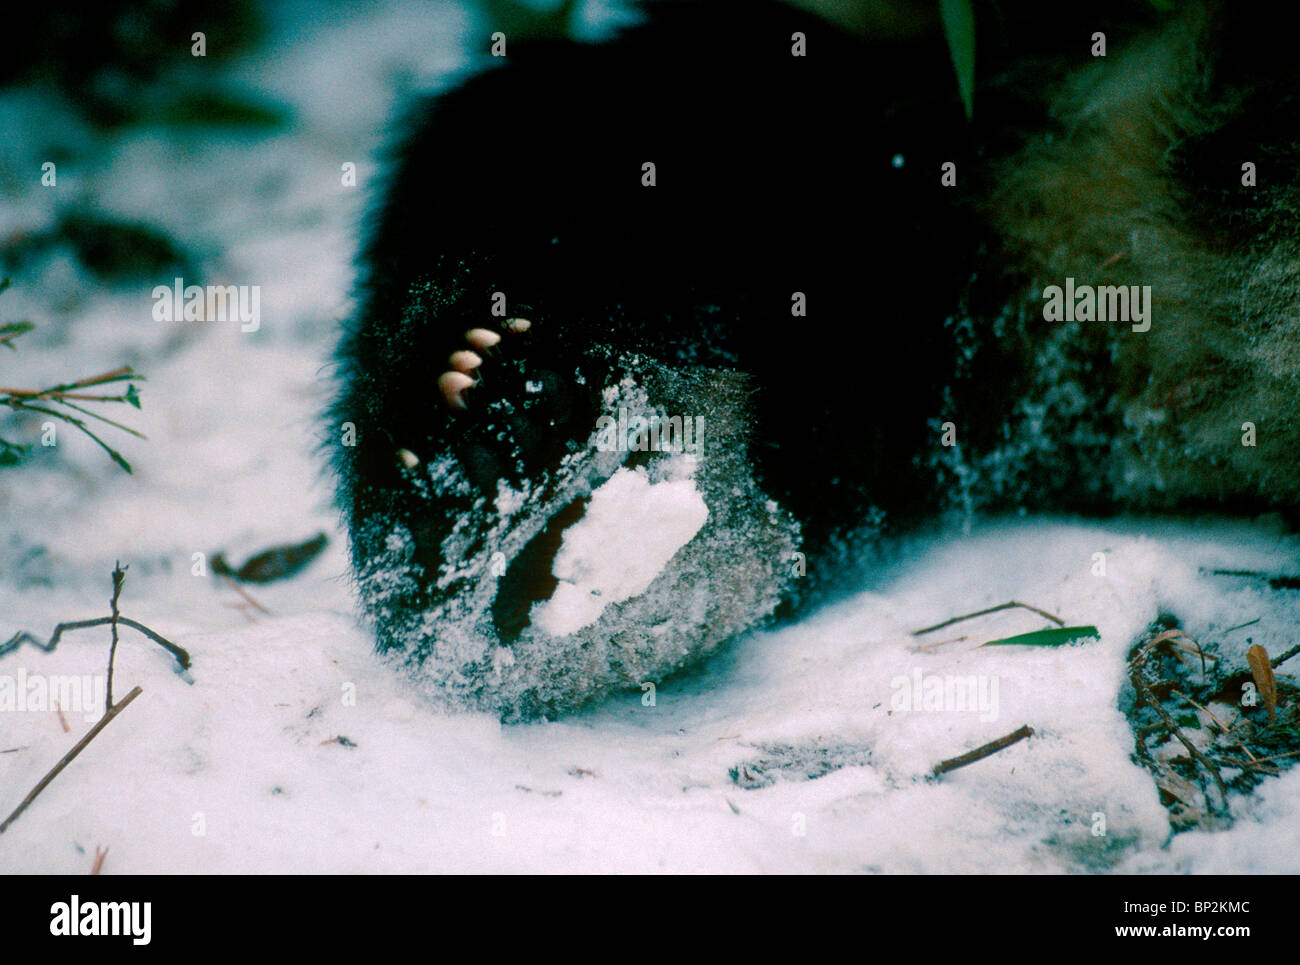 Parte inferiore del panda gigante zampa posteriore coperta di neve in inverno, Wolong, Cina Foto Stock